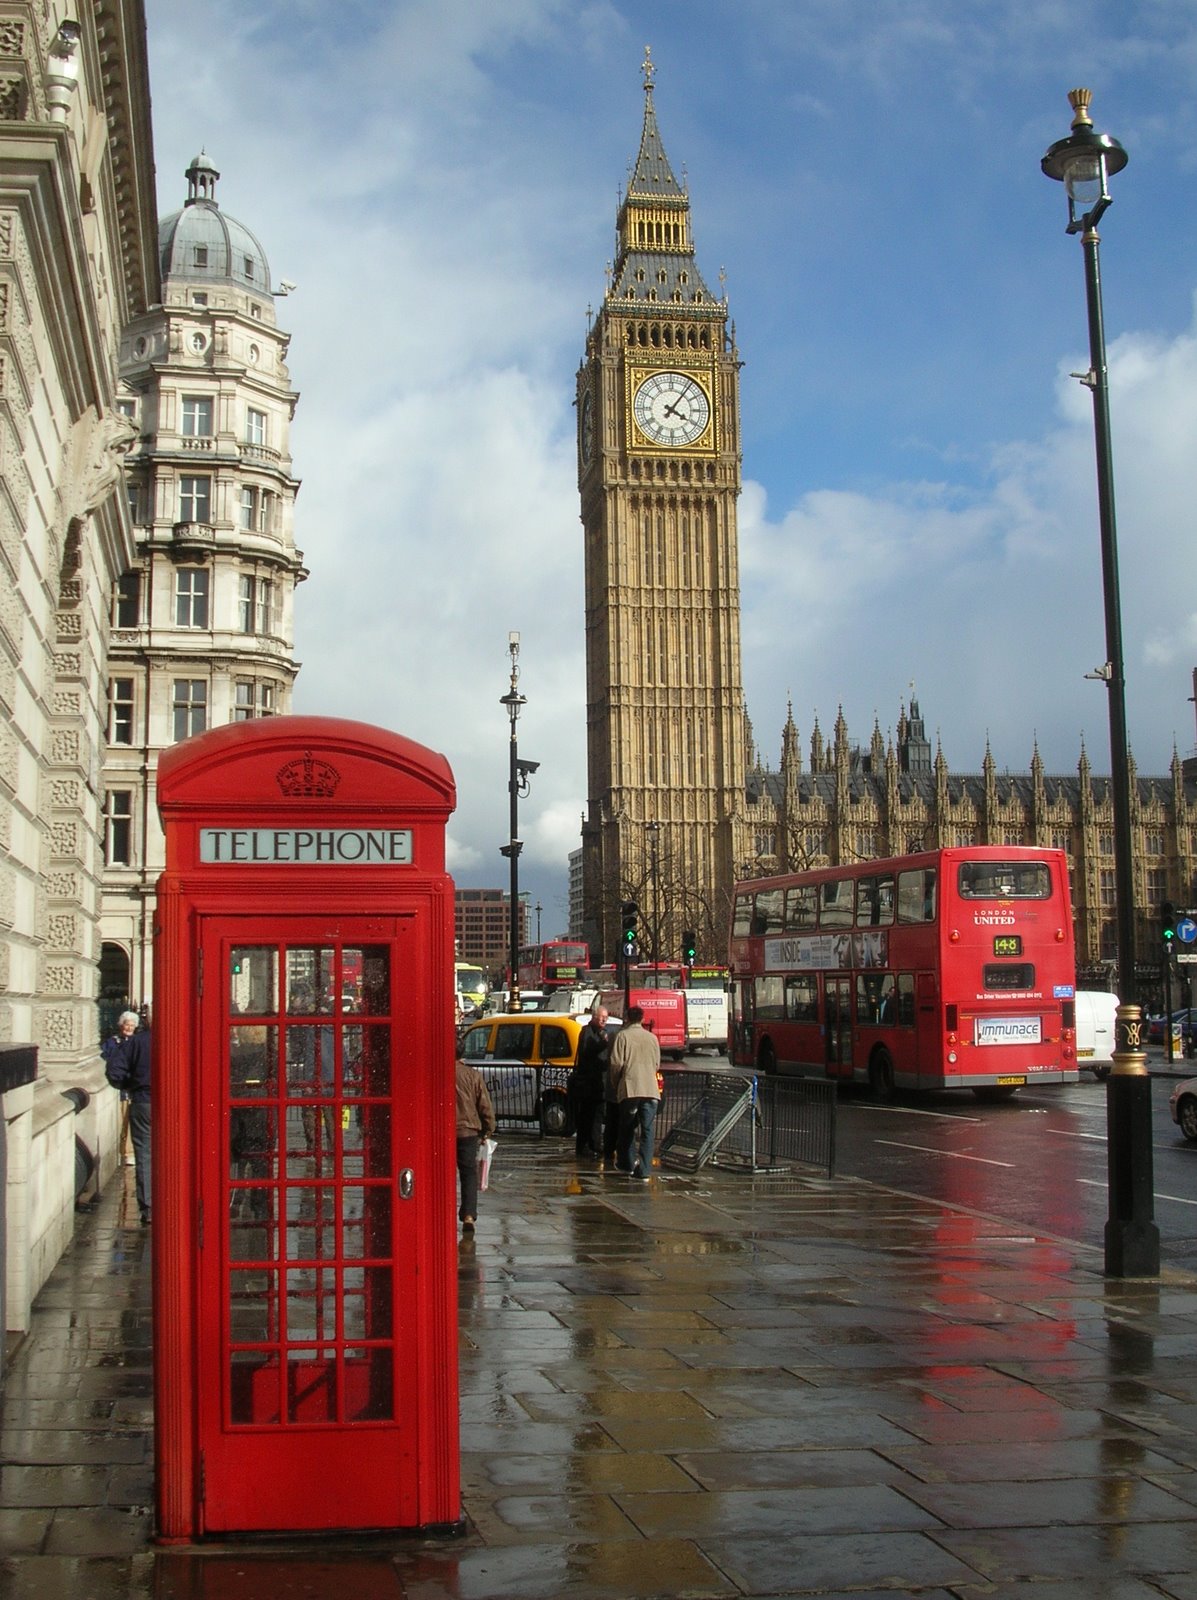 [London_Big_Ben_Phone_box.jpg]